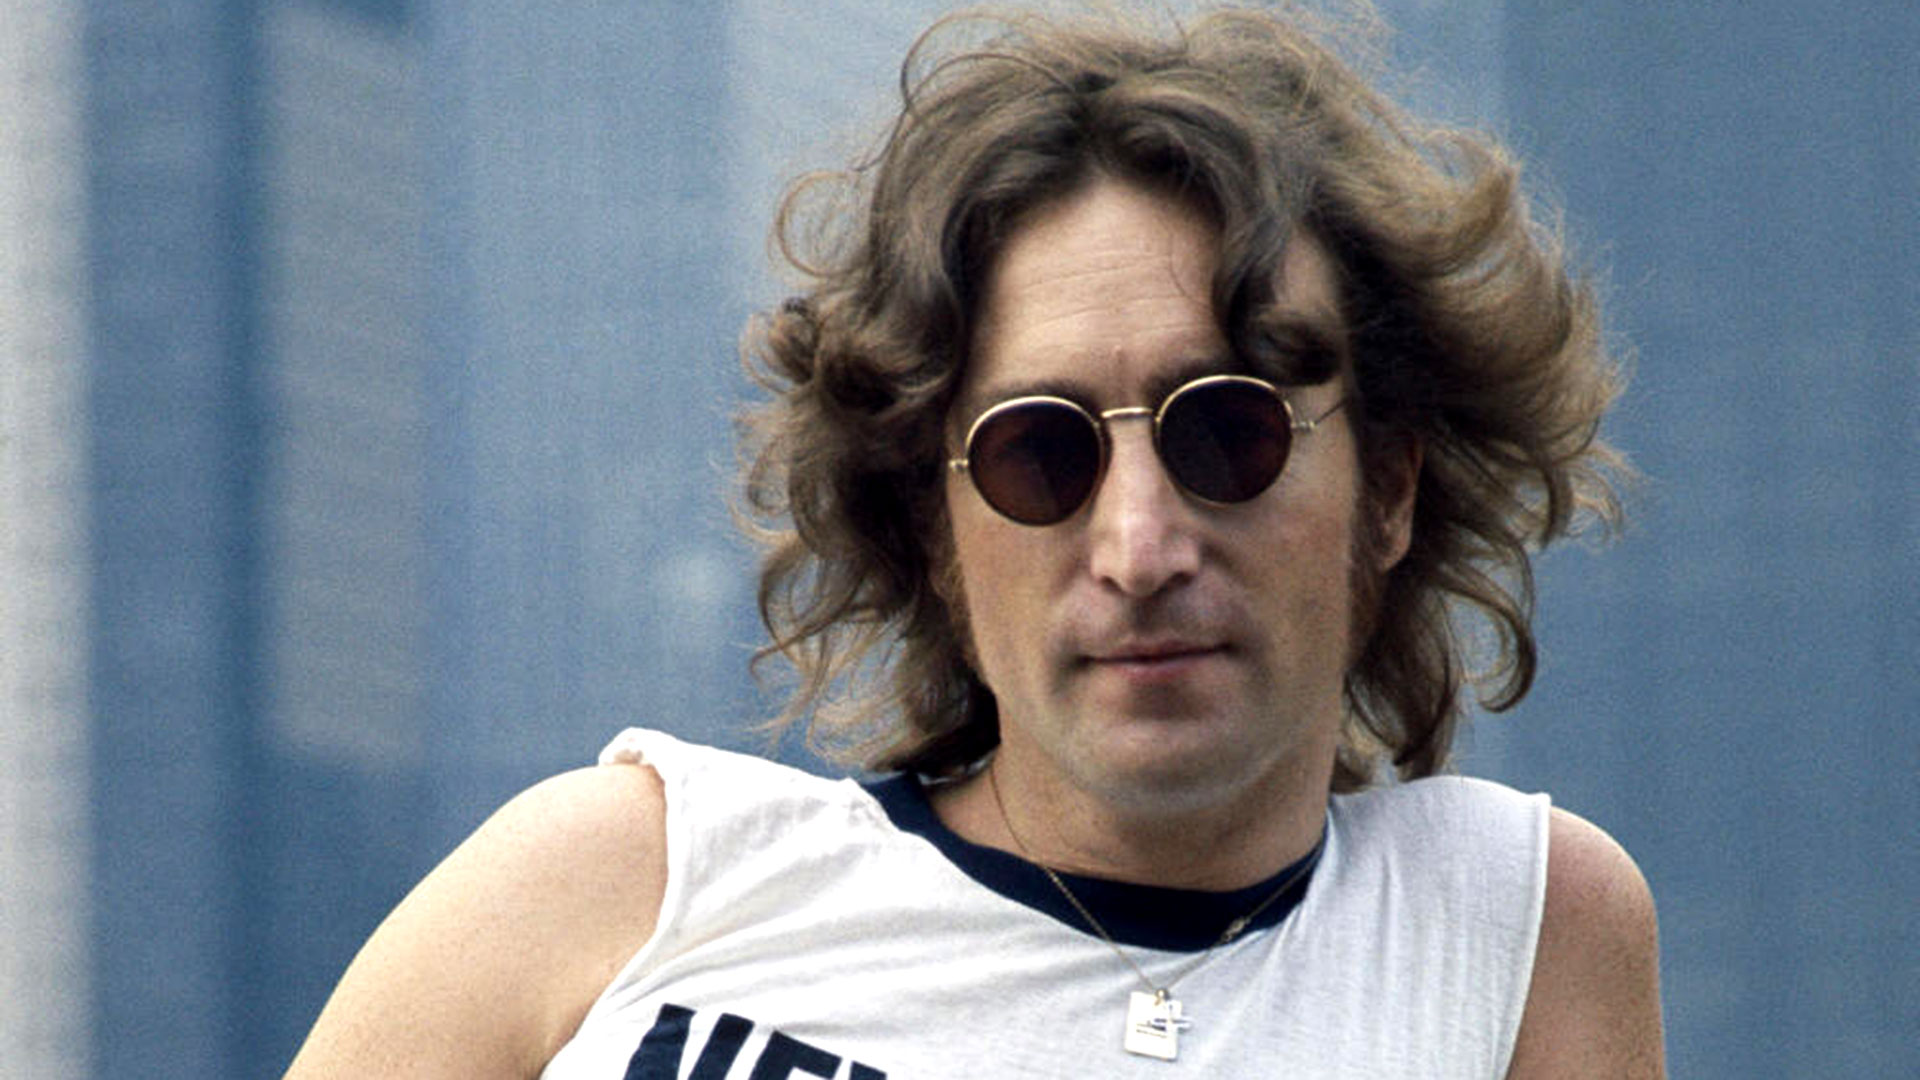 John Lennon Net Worth - How The Beatles Legend Built His Fortune